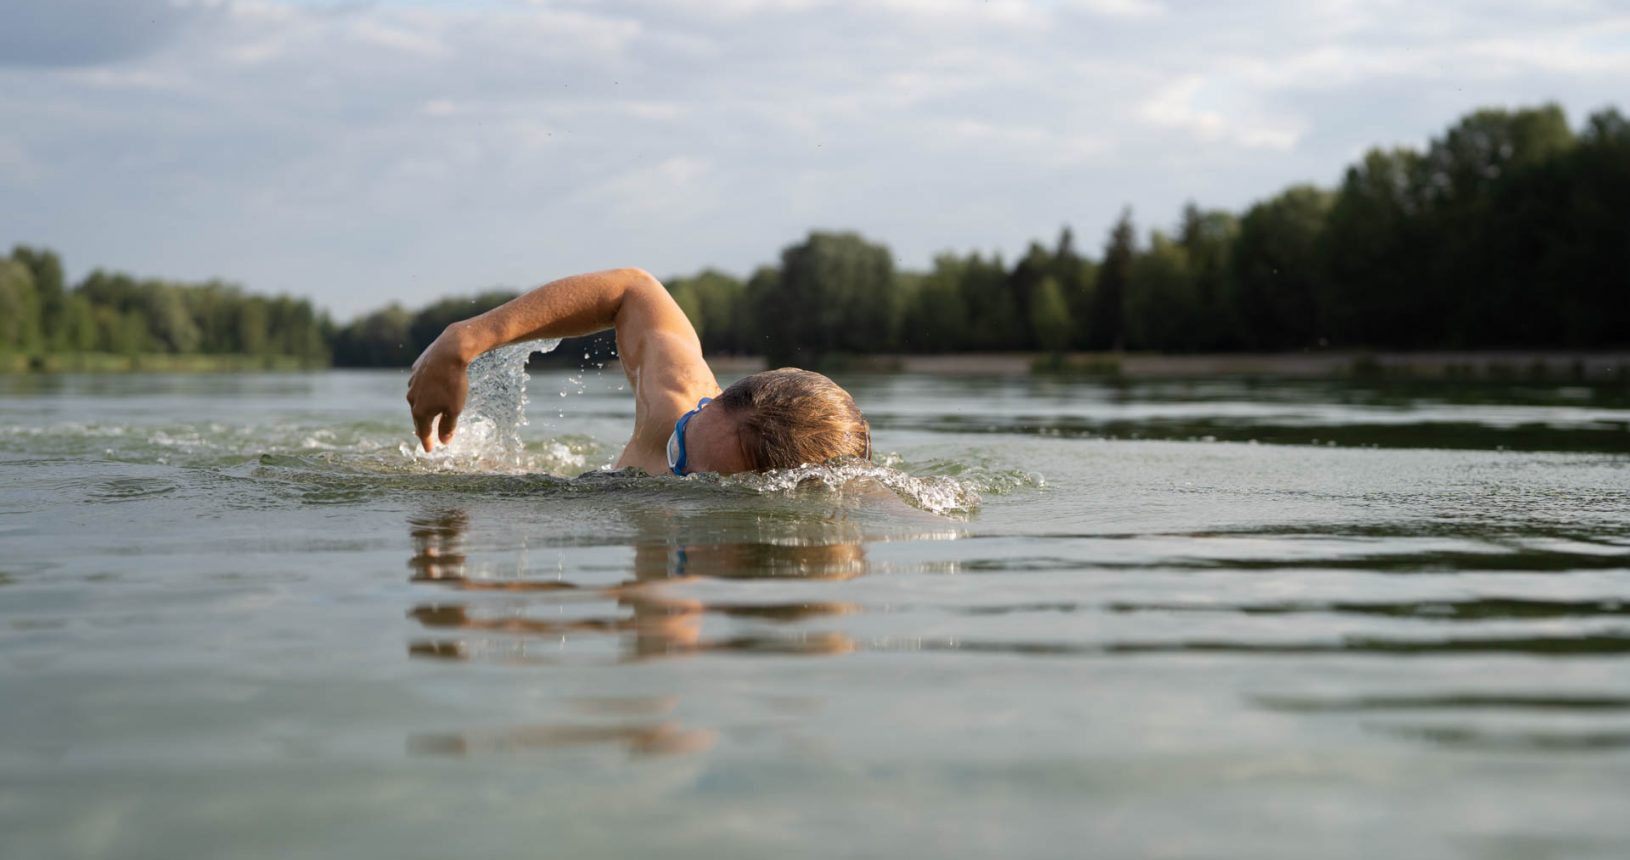 Eine Triathletin beim Schwimmen im Kuhsee in Augsburg - sie demonstriert ihre innere Stärke und ihre mentale Entschlossenheit.